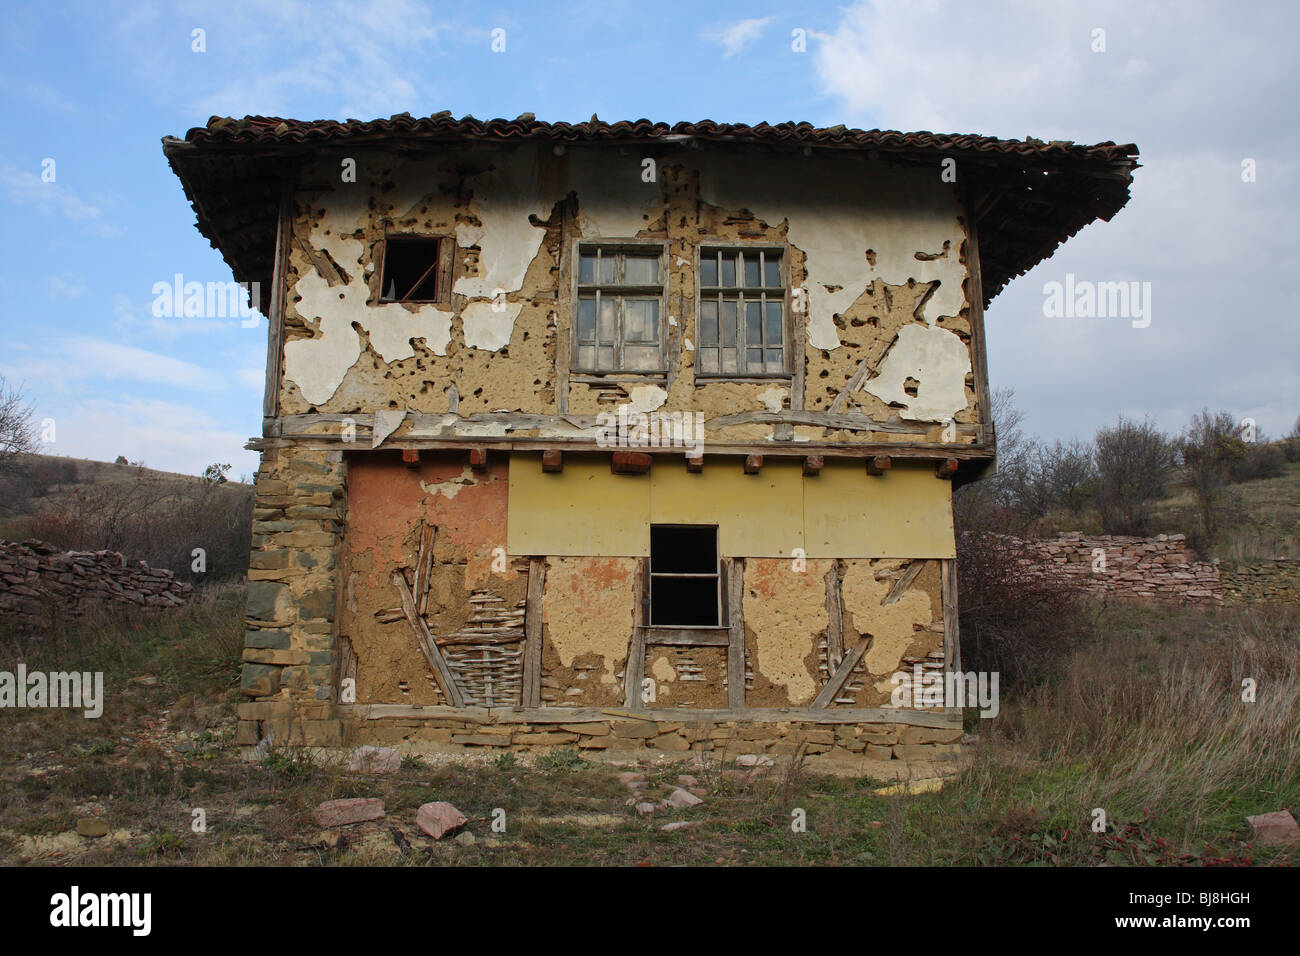 Landscape of derelict house in farmland, Bulgaria Stock Photo